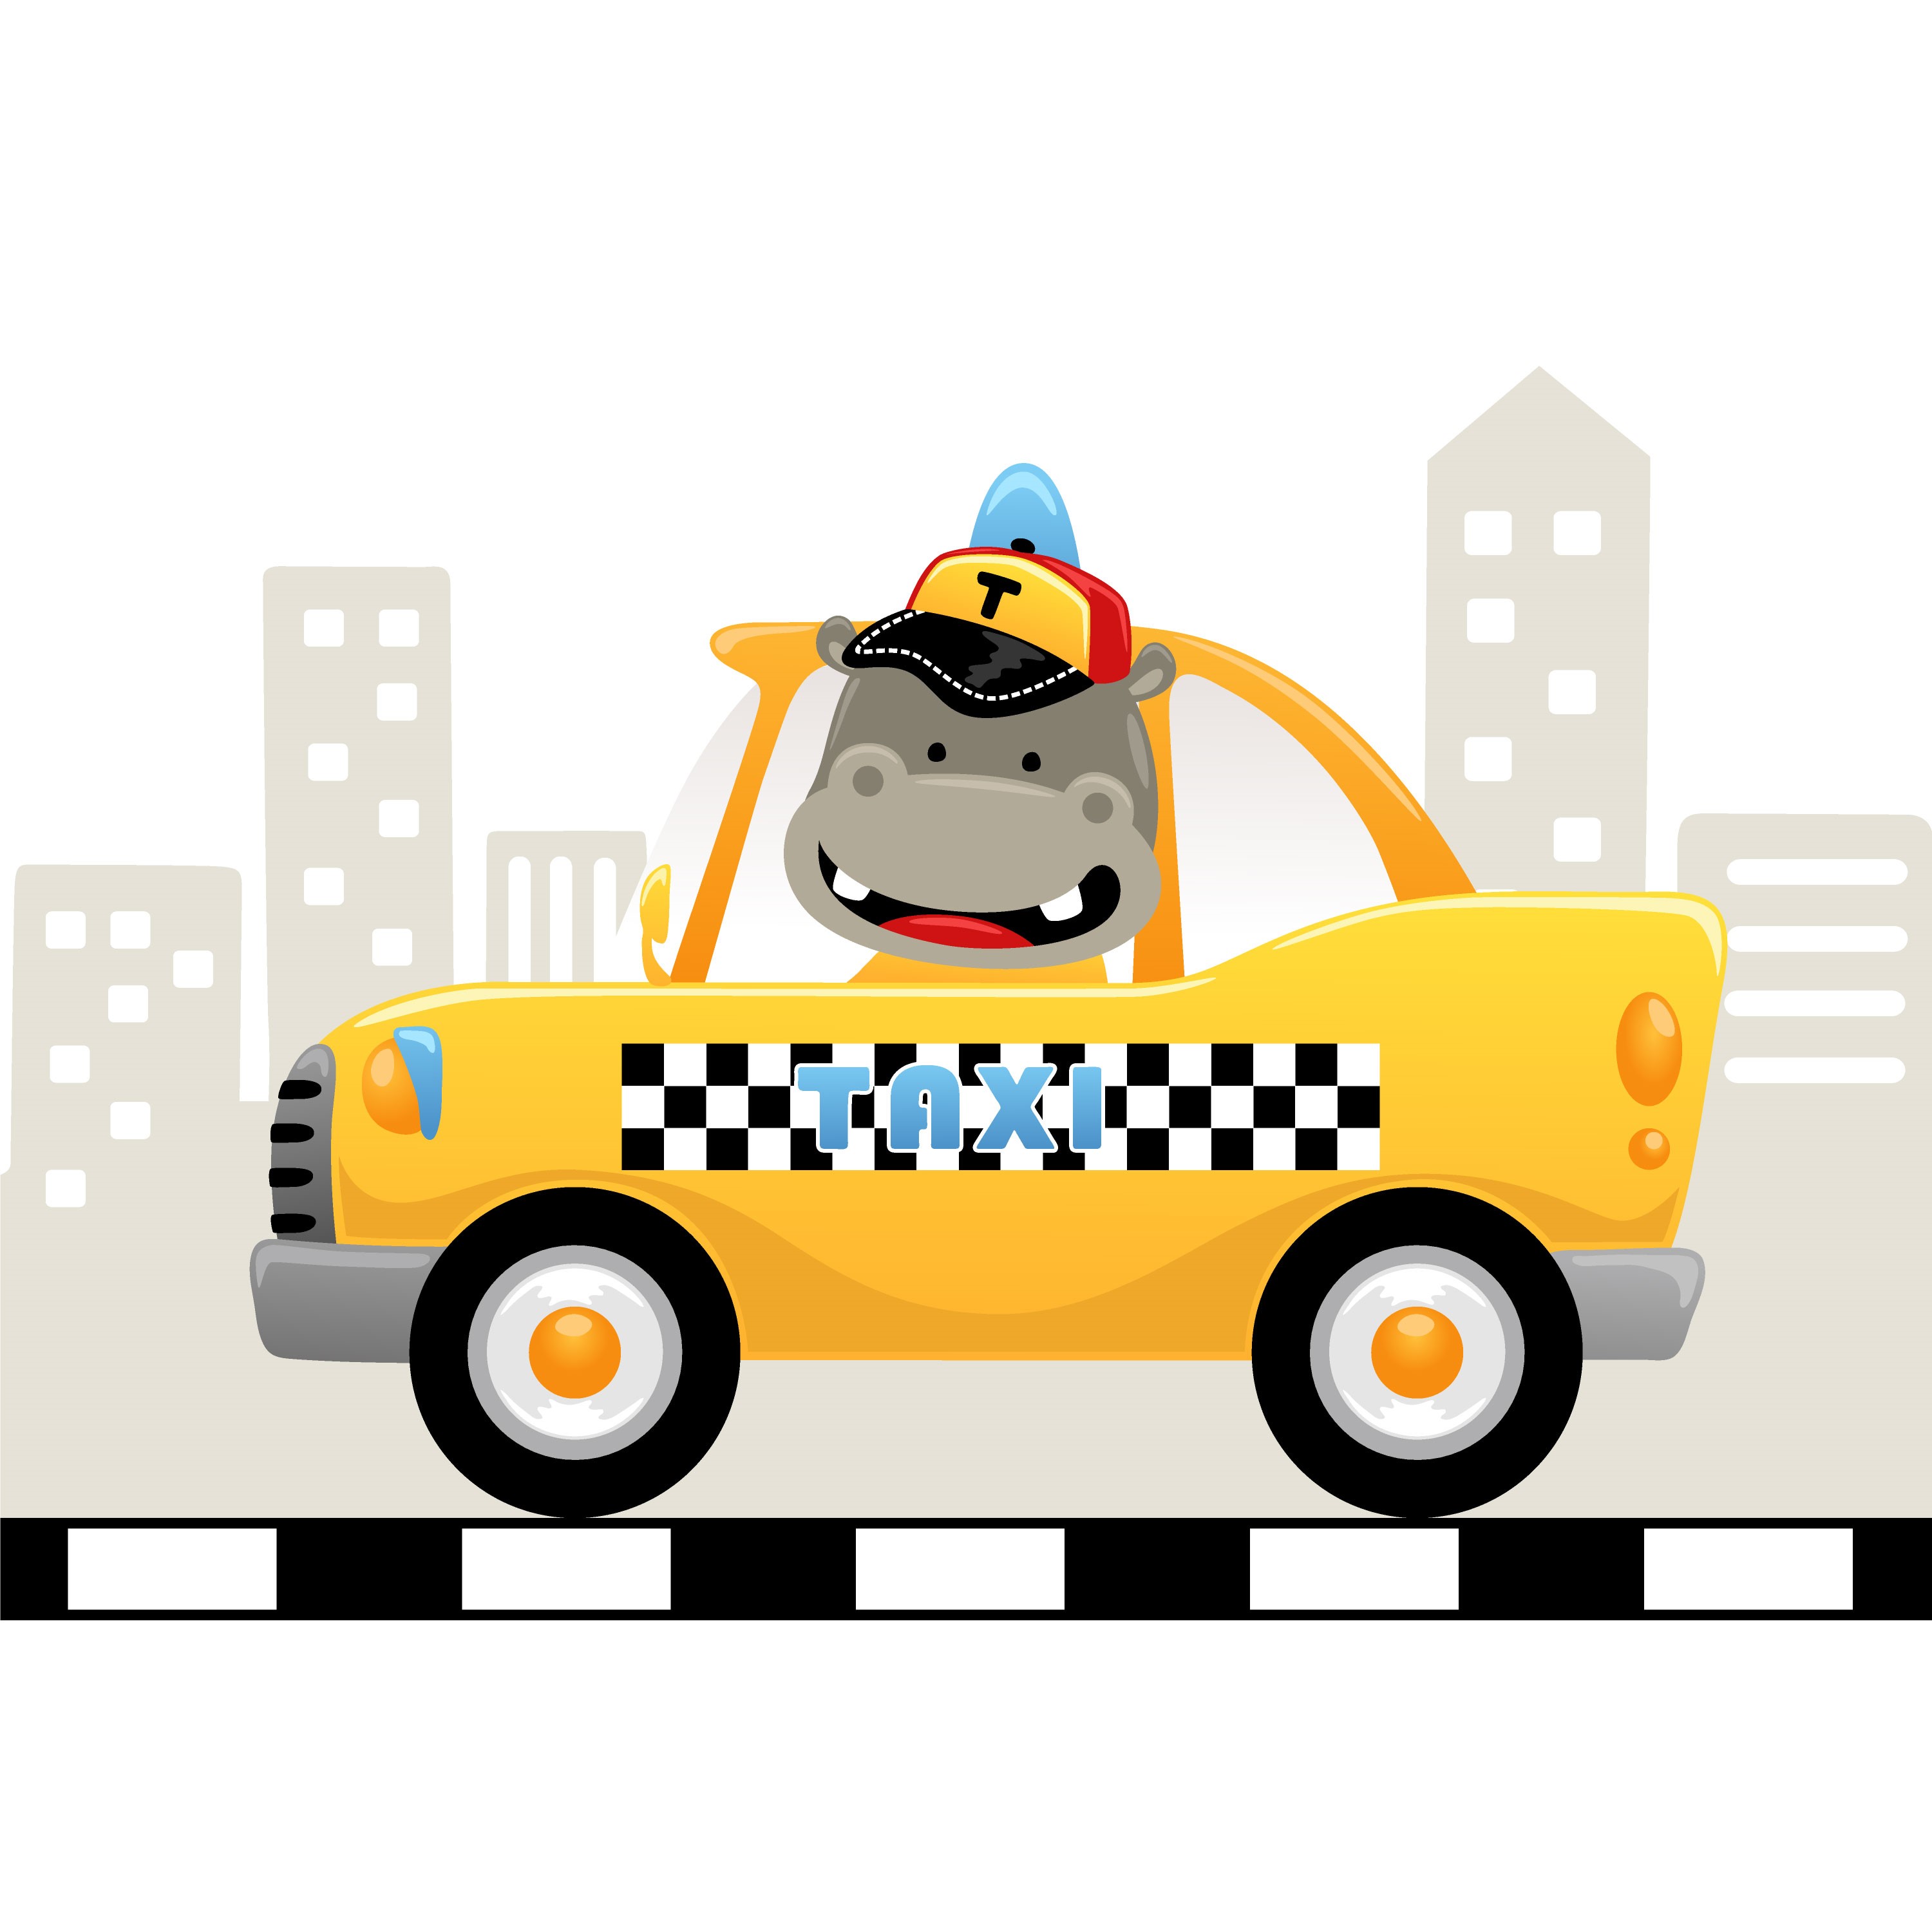 Образец раскрашенной картинки смешной бегемот водитель такси